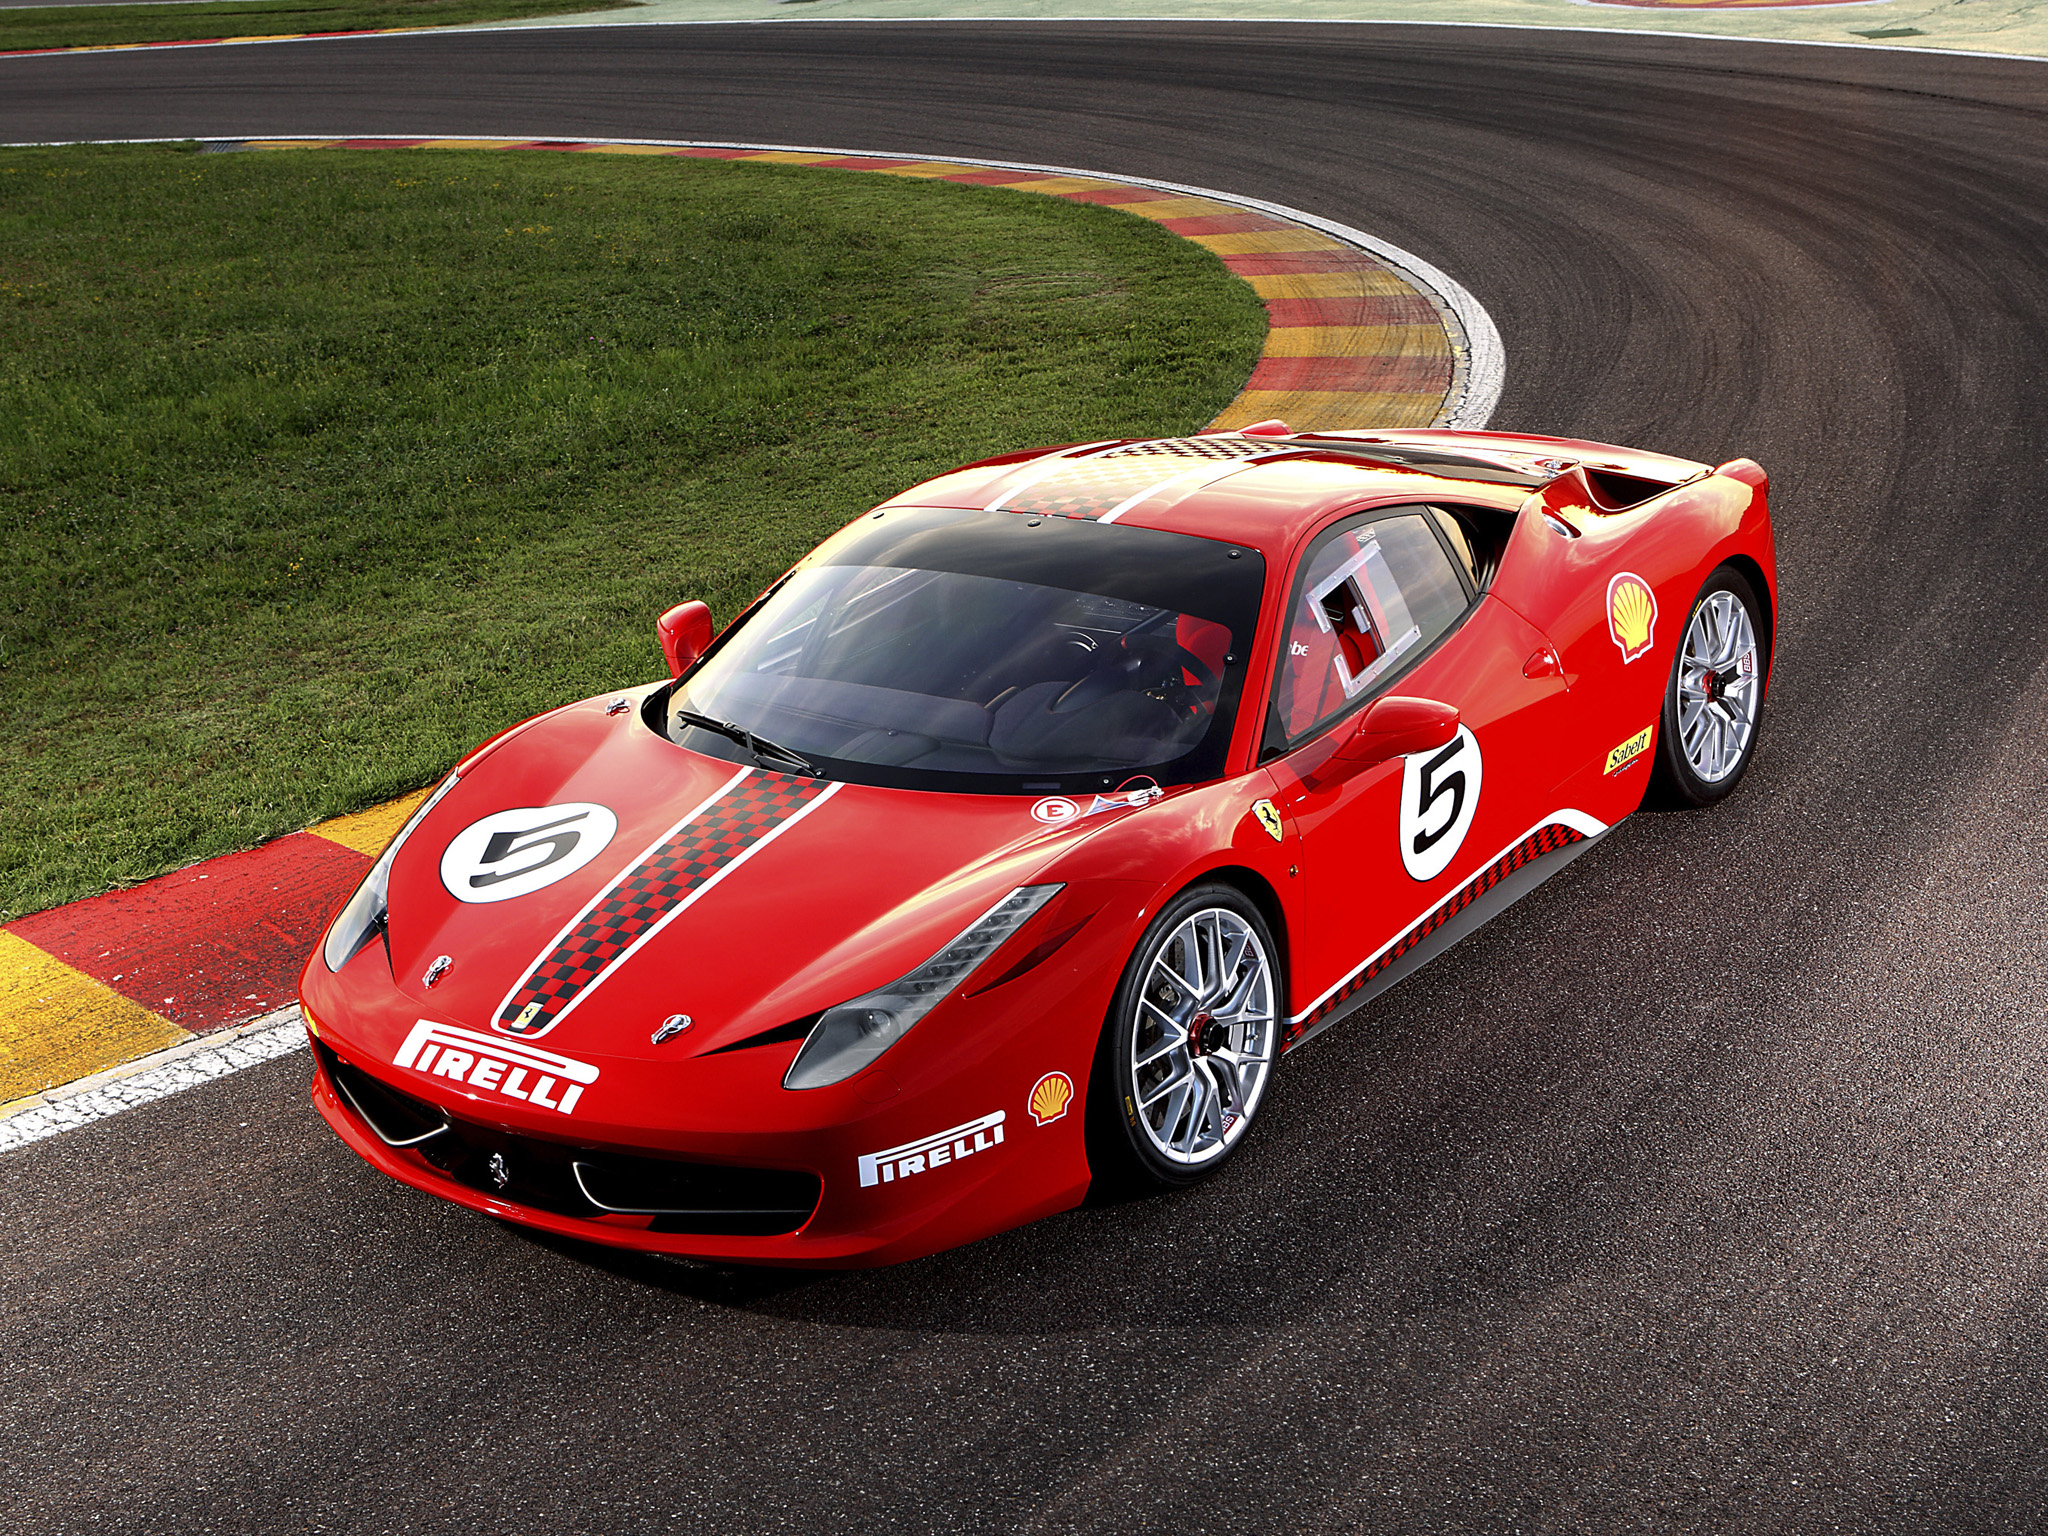 Télécharger des fonds d'écran Défi Ferrari 458 HD